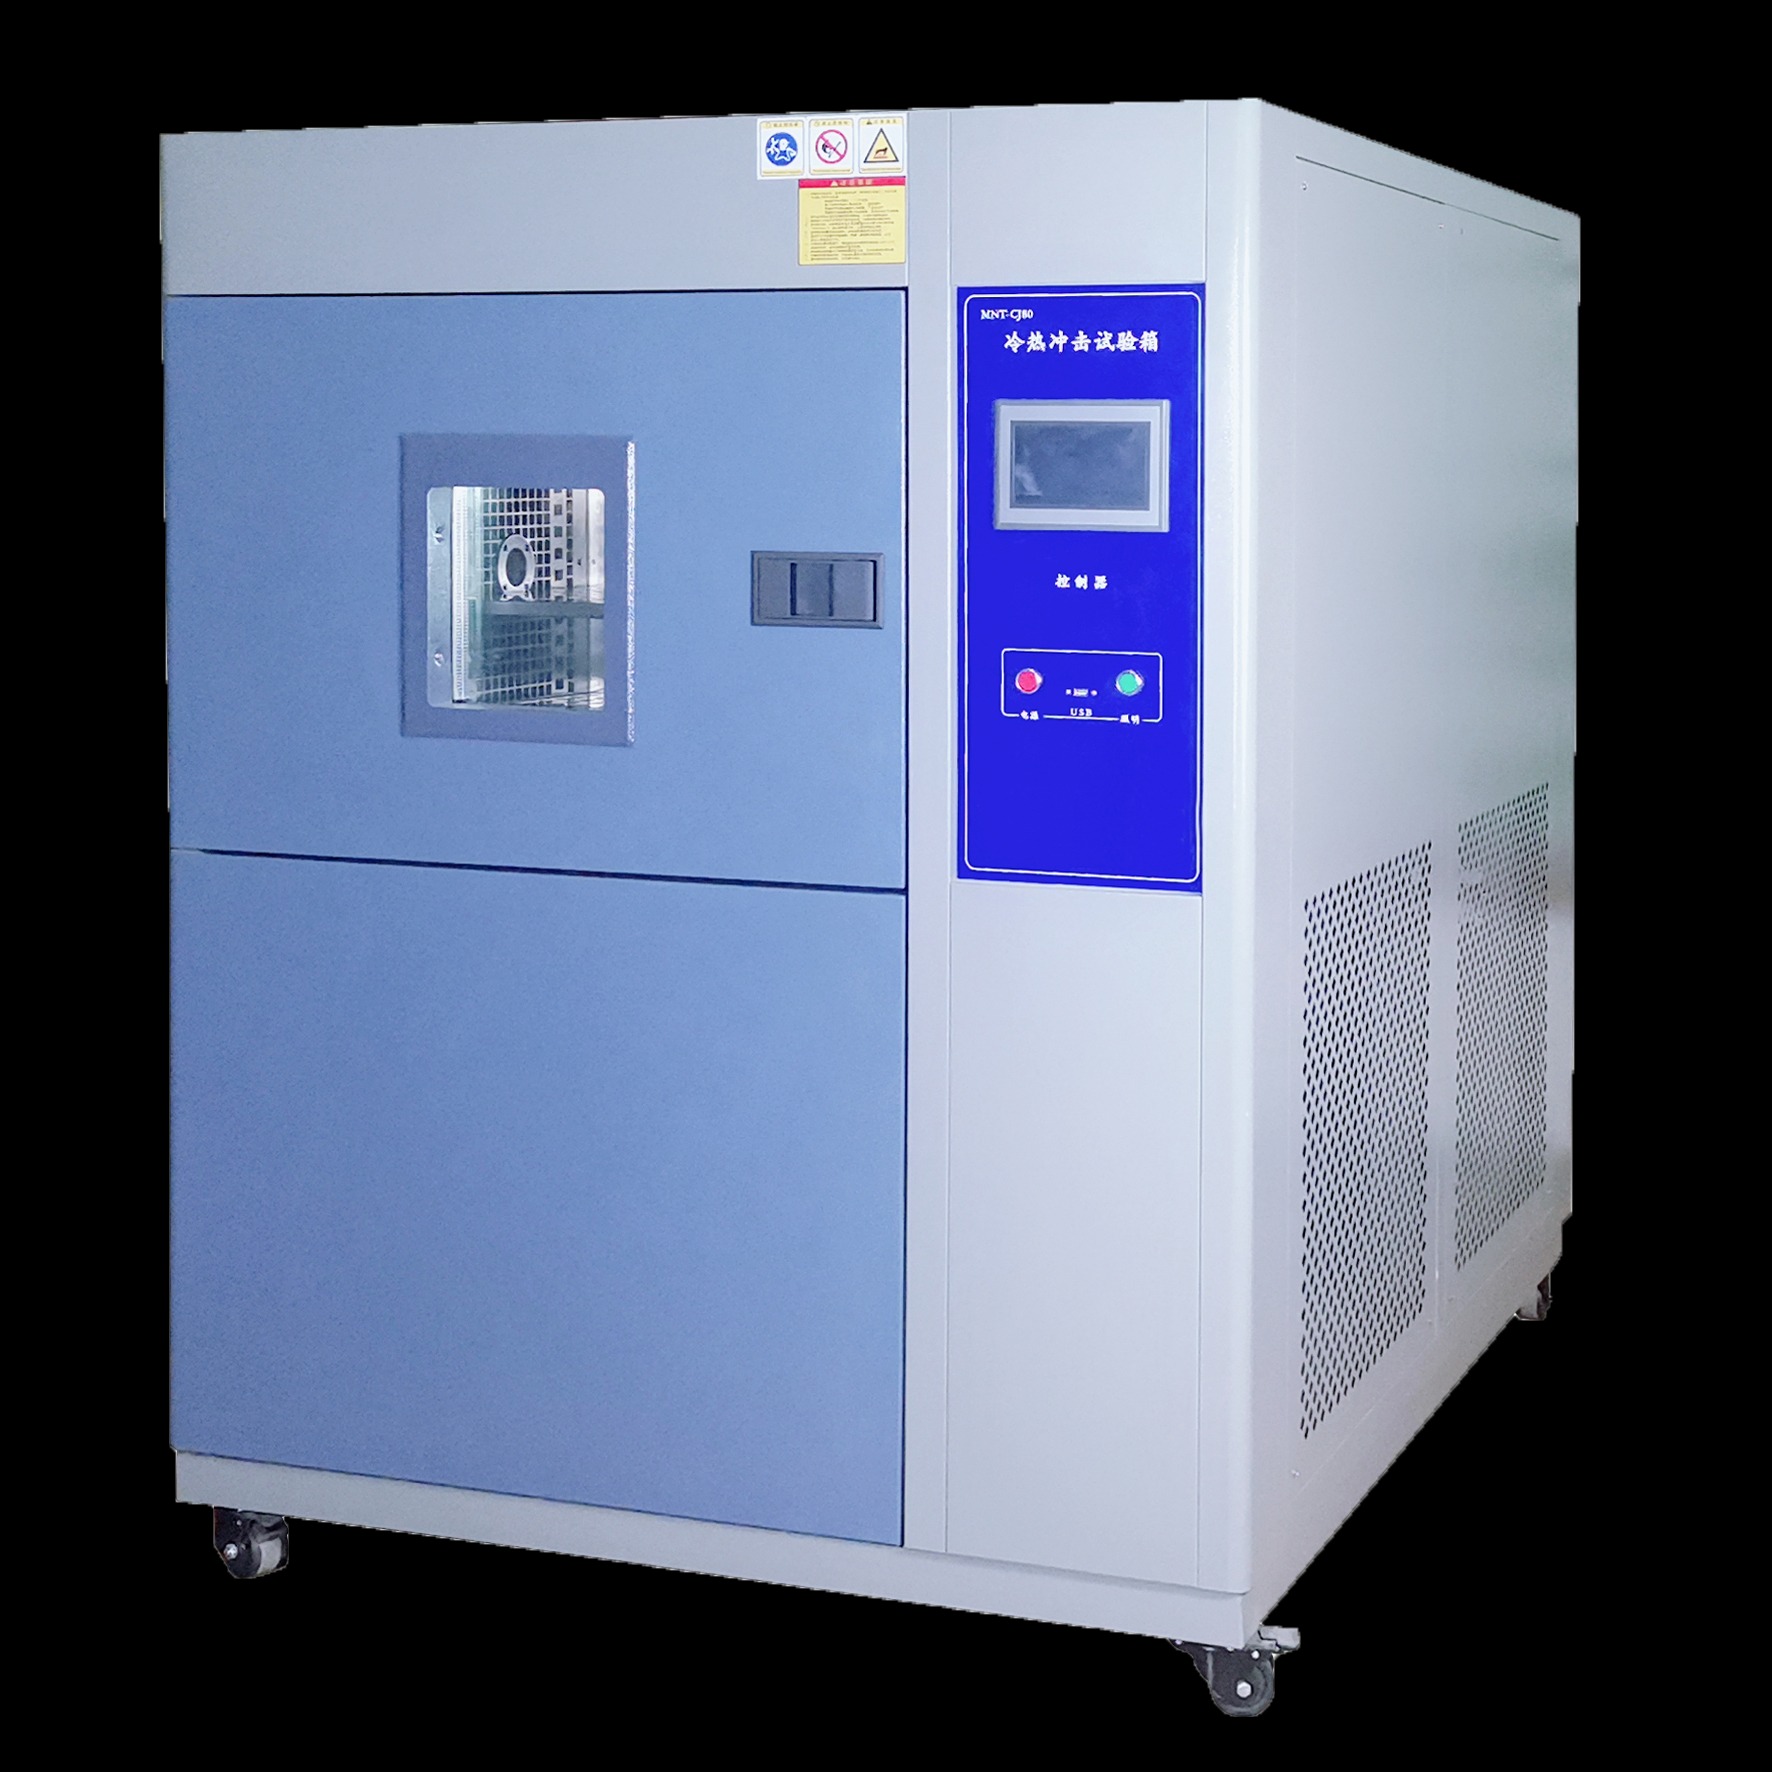 嘉仪JAY-1121高低温冷热冲击试验箱 环境类实验箱 厂家直销 新国标低价